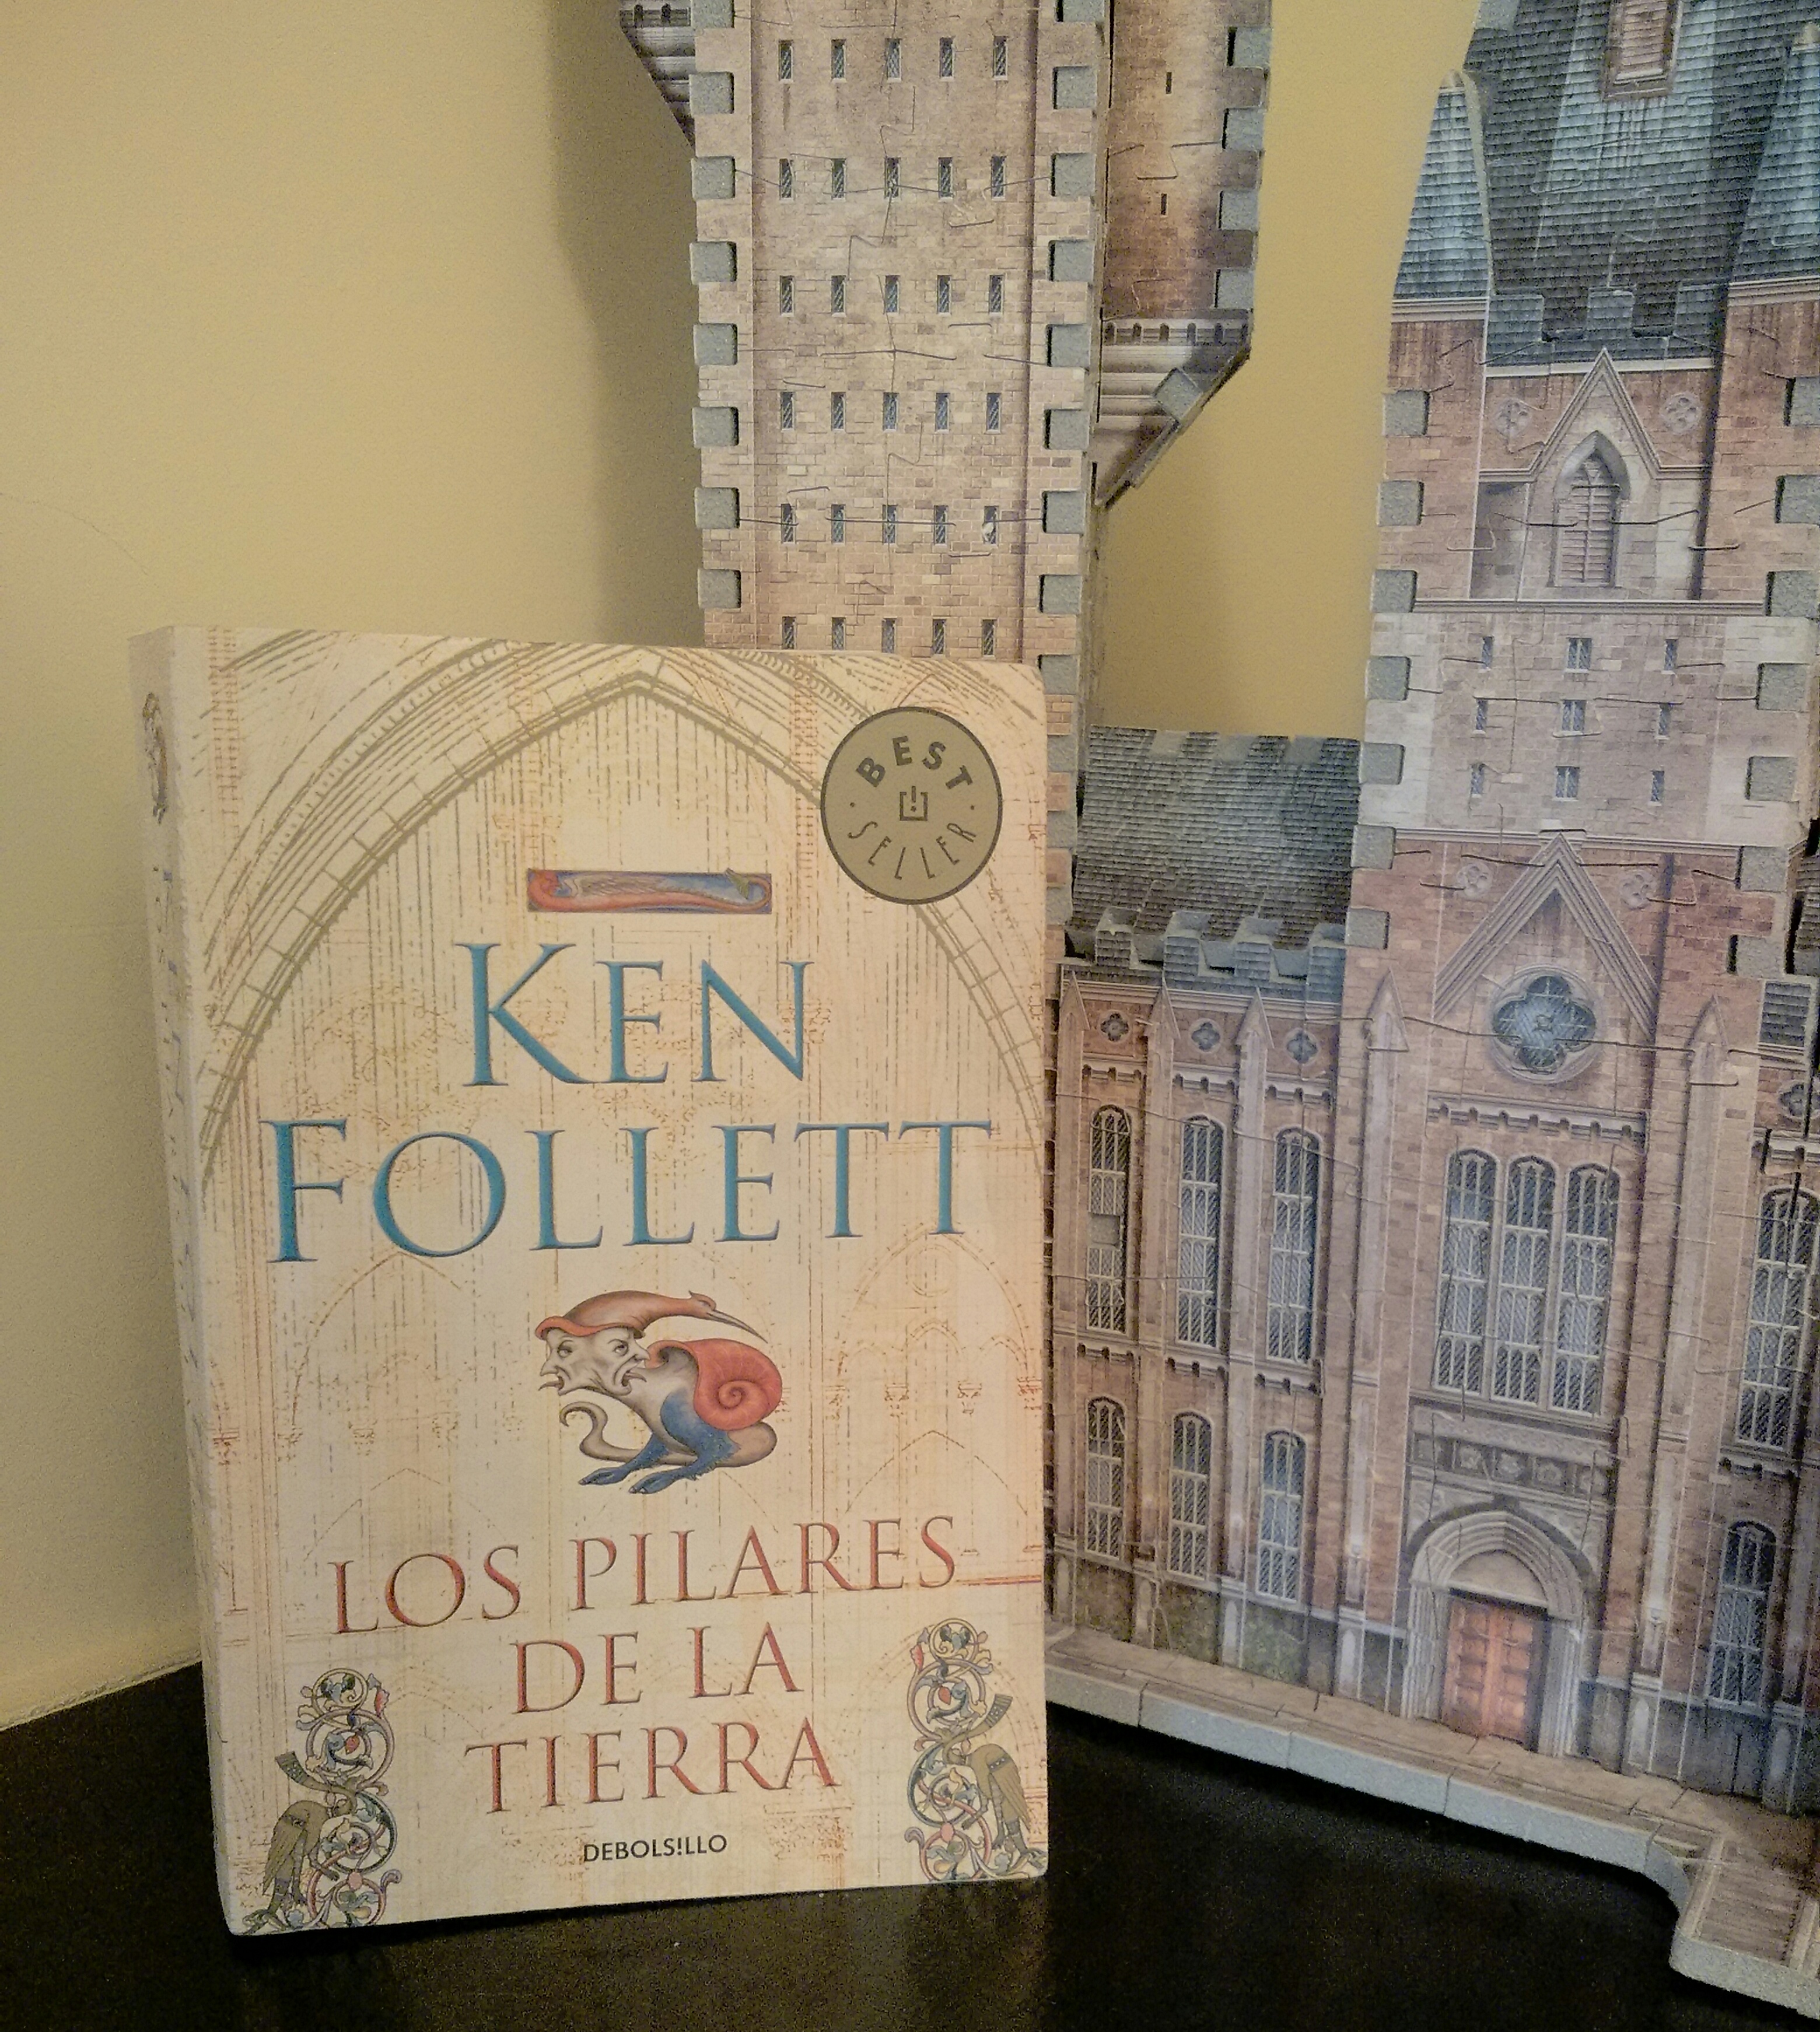 Los pilares de la tierra, Ken Follett, literatura histórica, edad media, catedral, ficción histórica, relectura